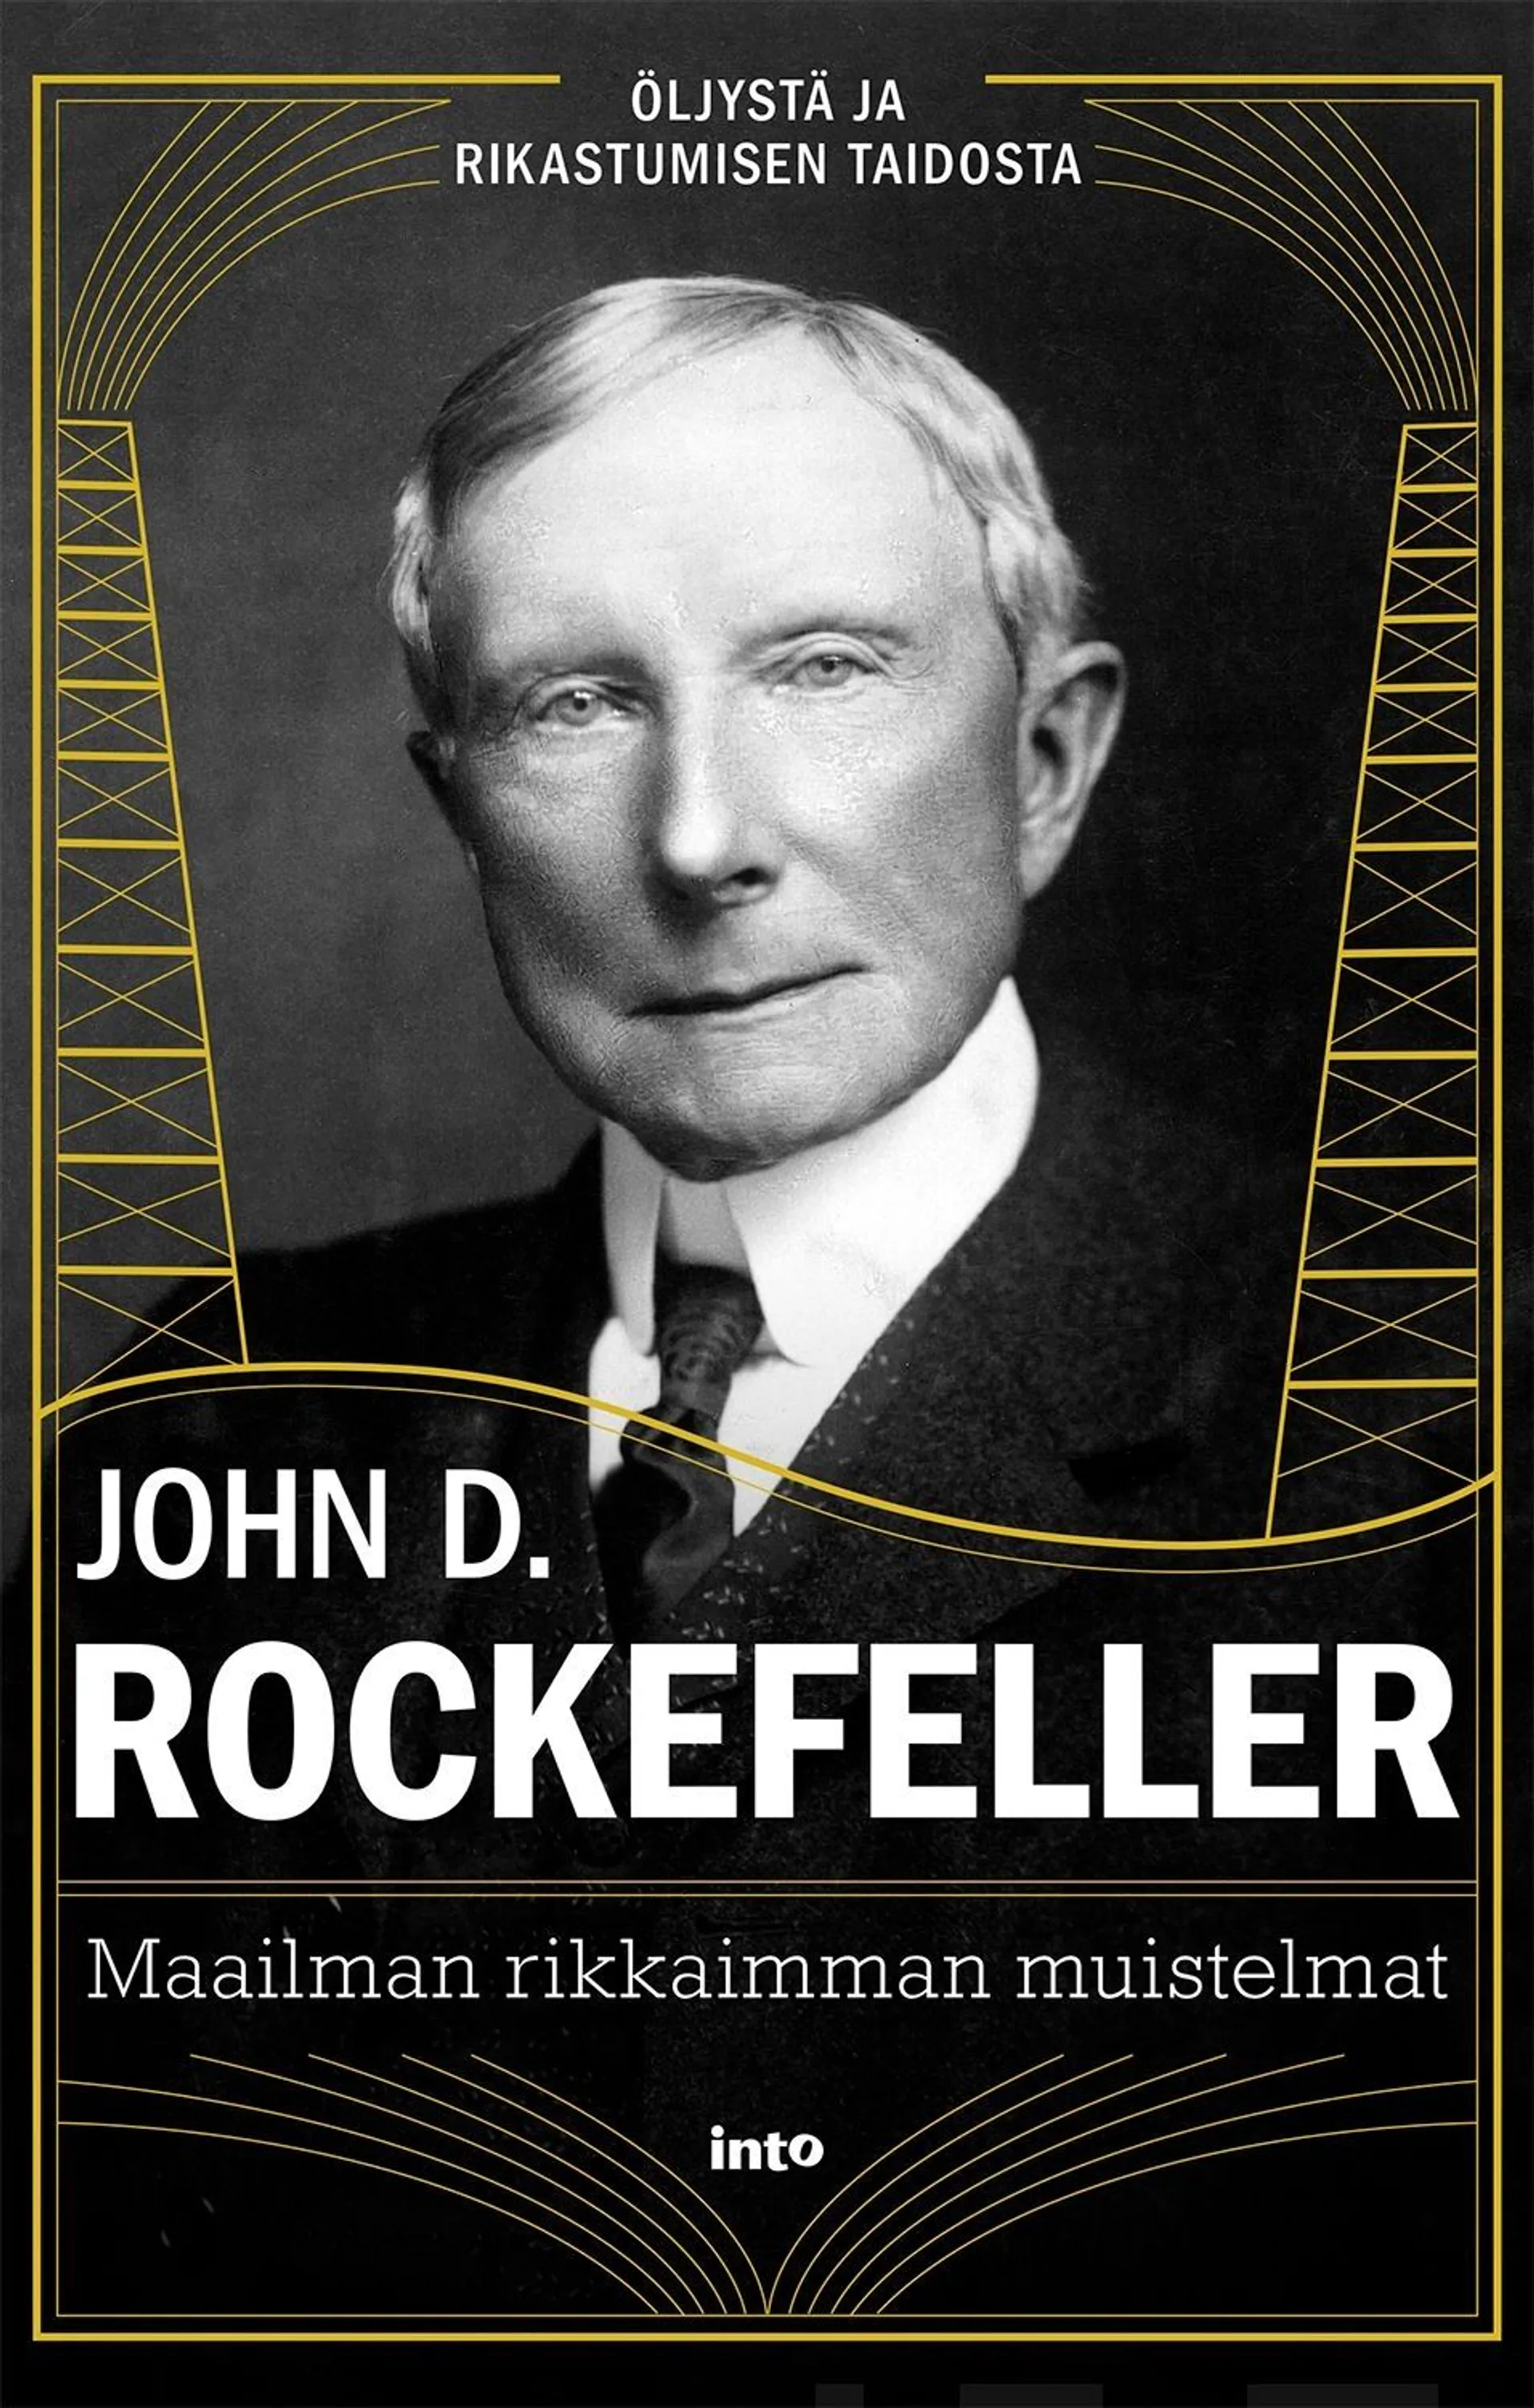 Rockefeller, Maailman rikkaimman muistelmat